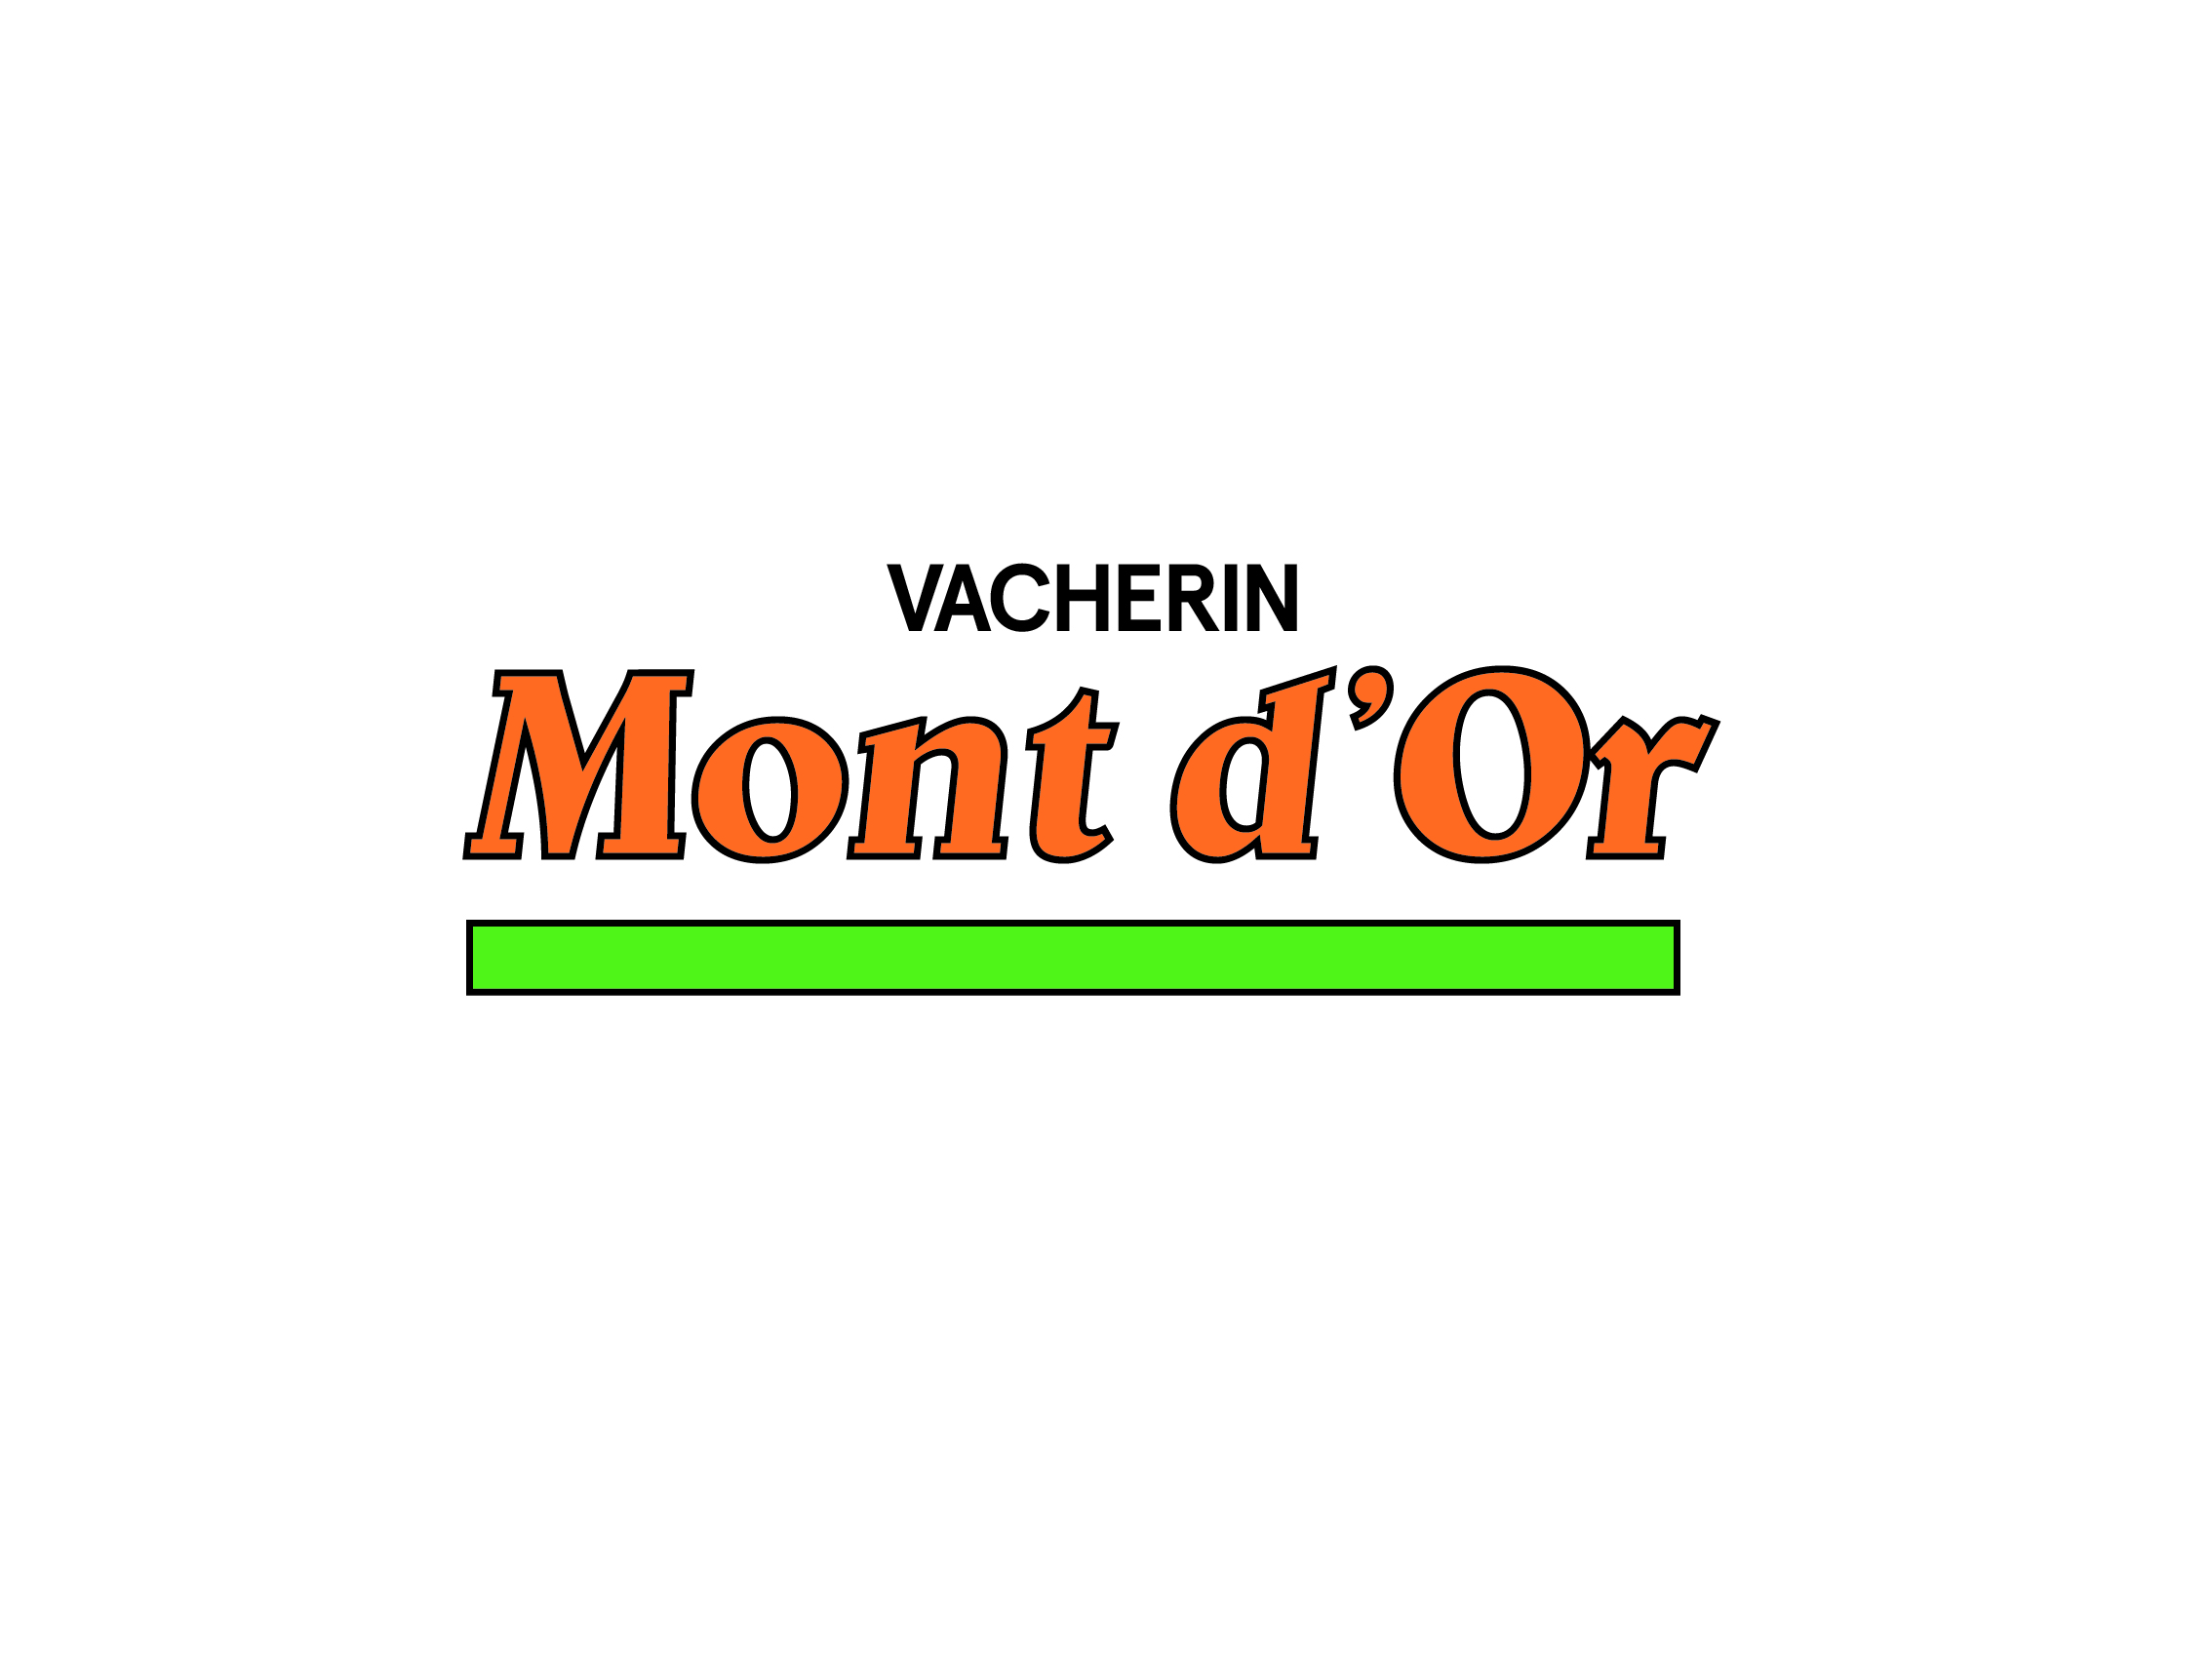 Vacherin Mont d’Or